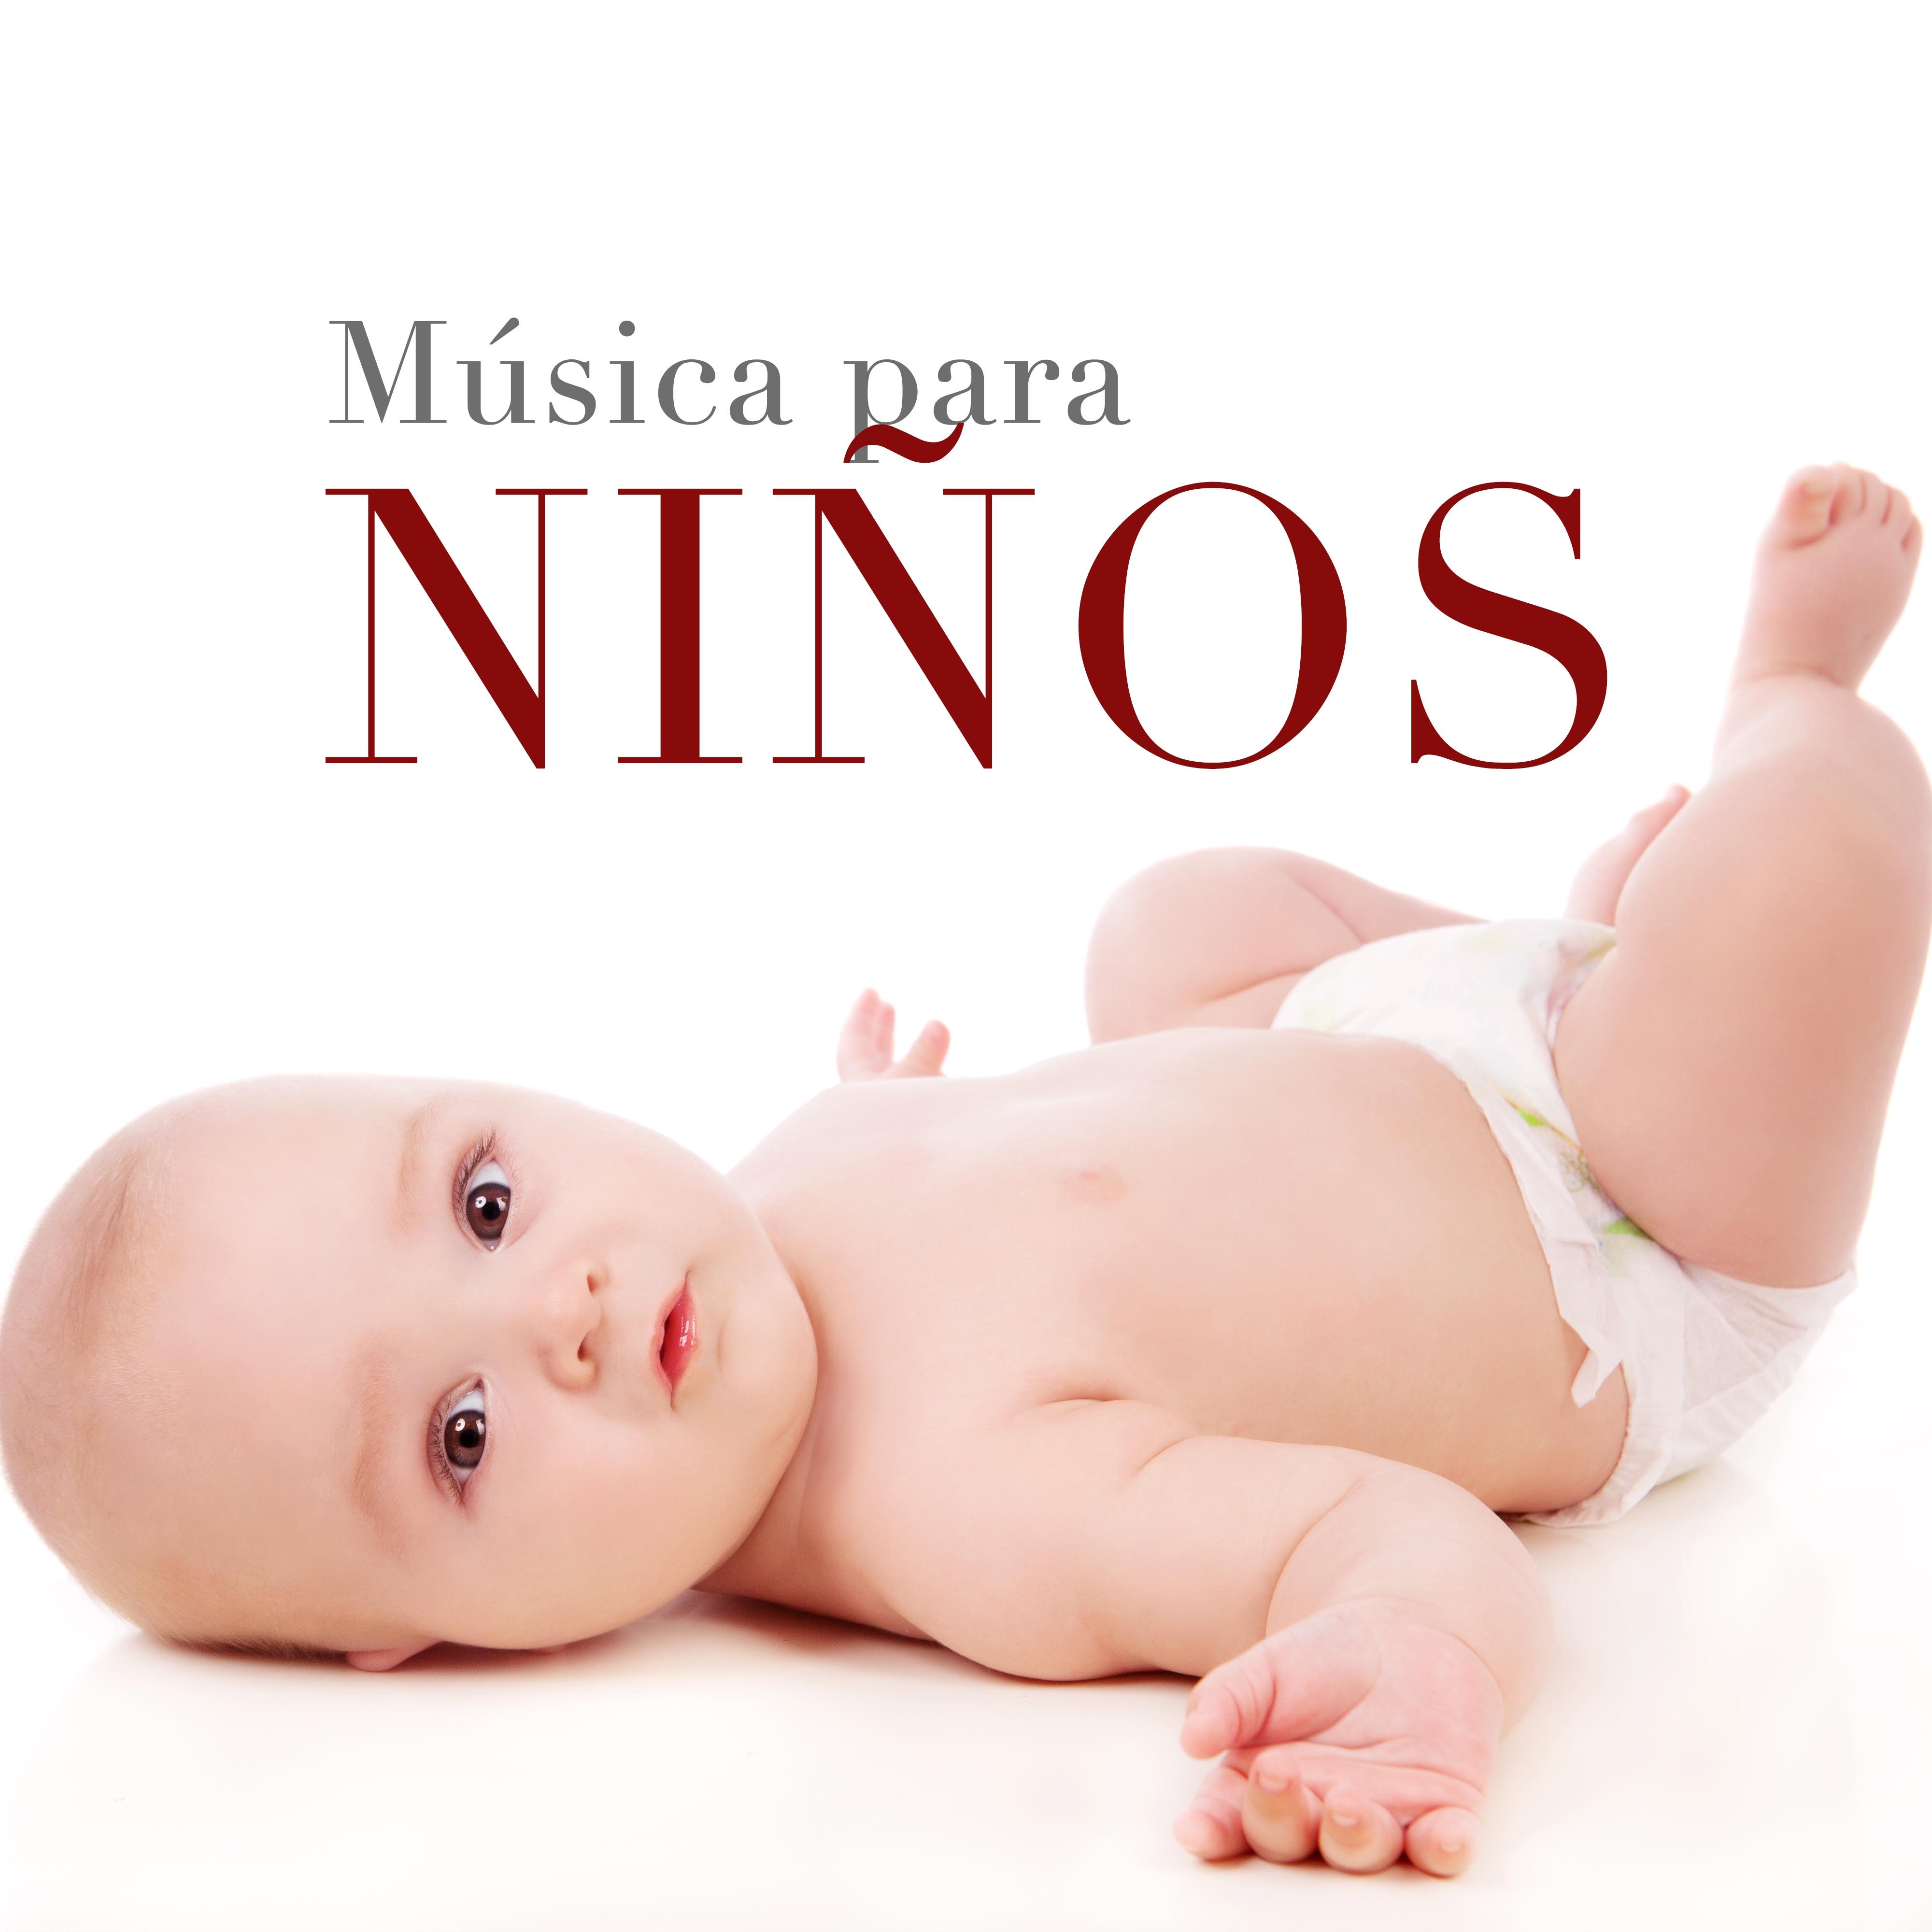 Música para Niños: Melodías de Piano, Flauta de Pan y Sonidos de la Naturaleza para Relajar Bebés en el Vientre y Recién Nacidos